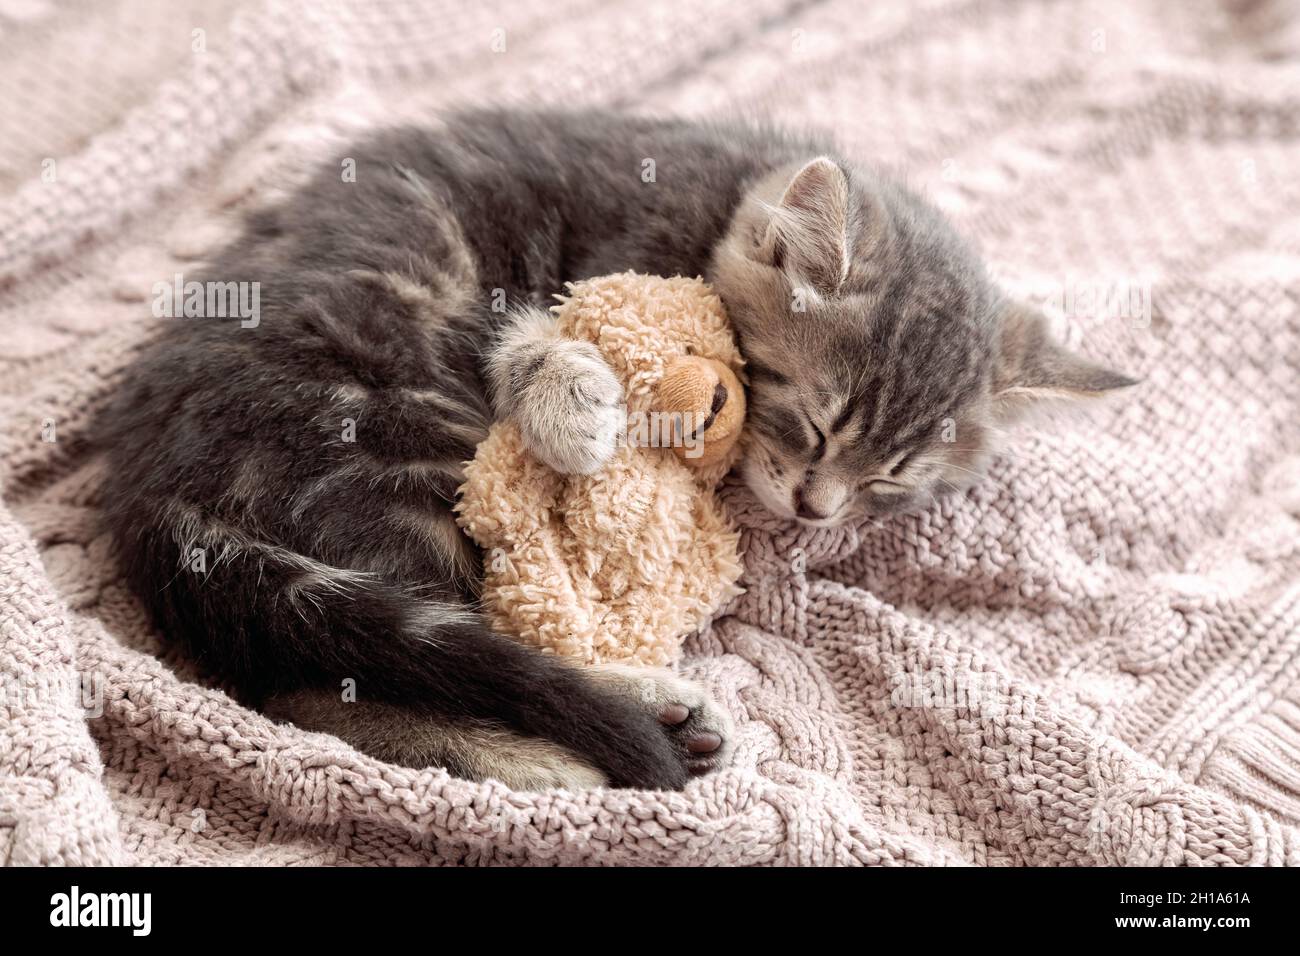 Un petit chat dorment sur une couverture confortable qui se porte comme un  jouet.Peluche tabby kitten snoozing confortable câlin teddy ours sur  tricoté rose écossais.Espace de copie. Chaton de bébé Photo Stock -